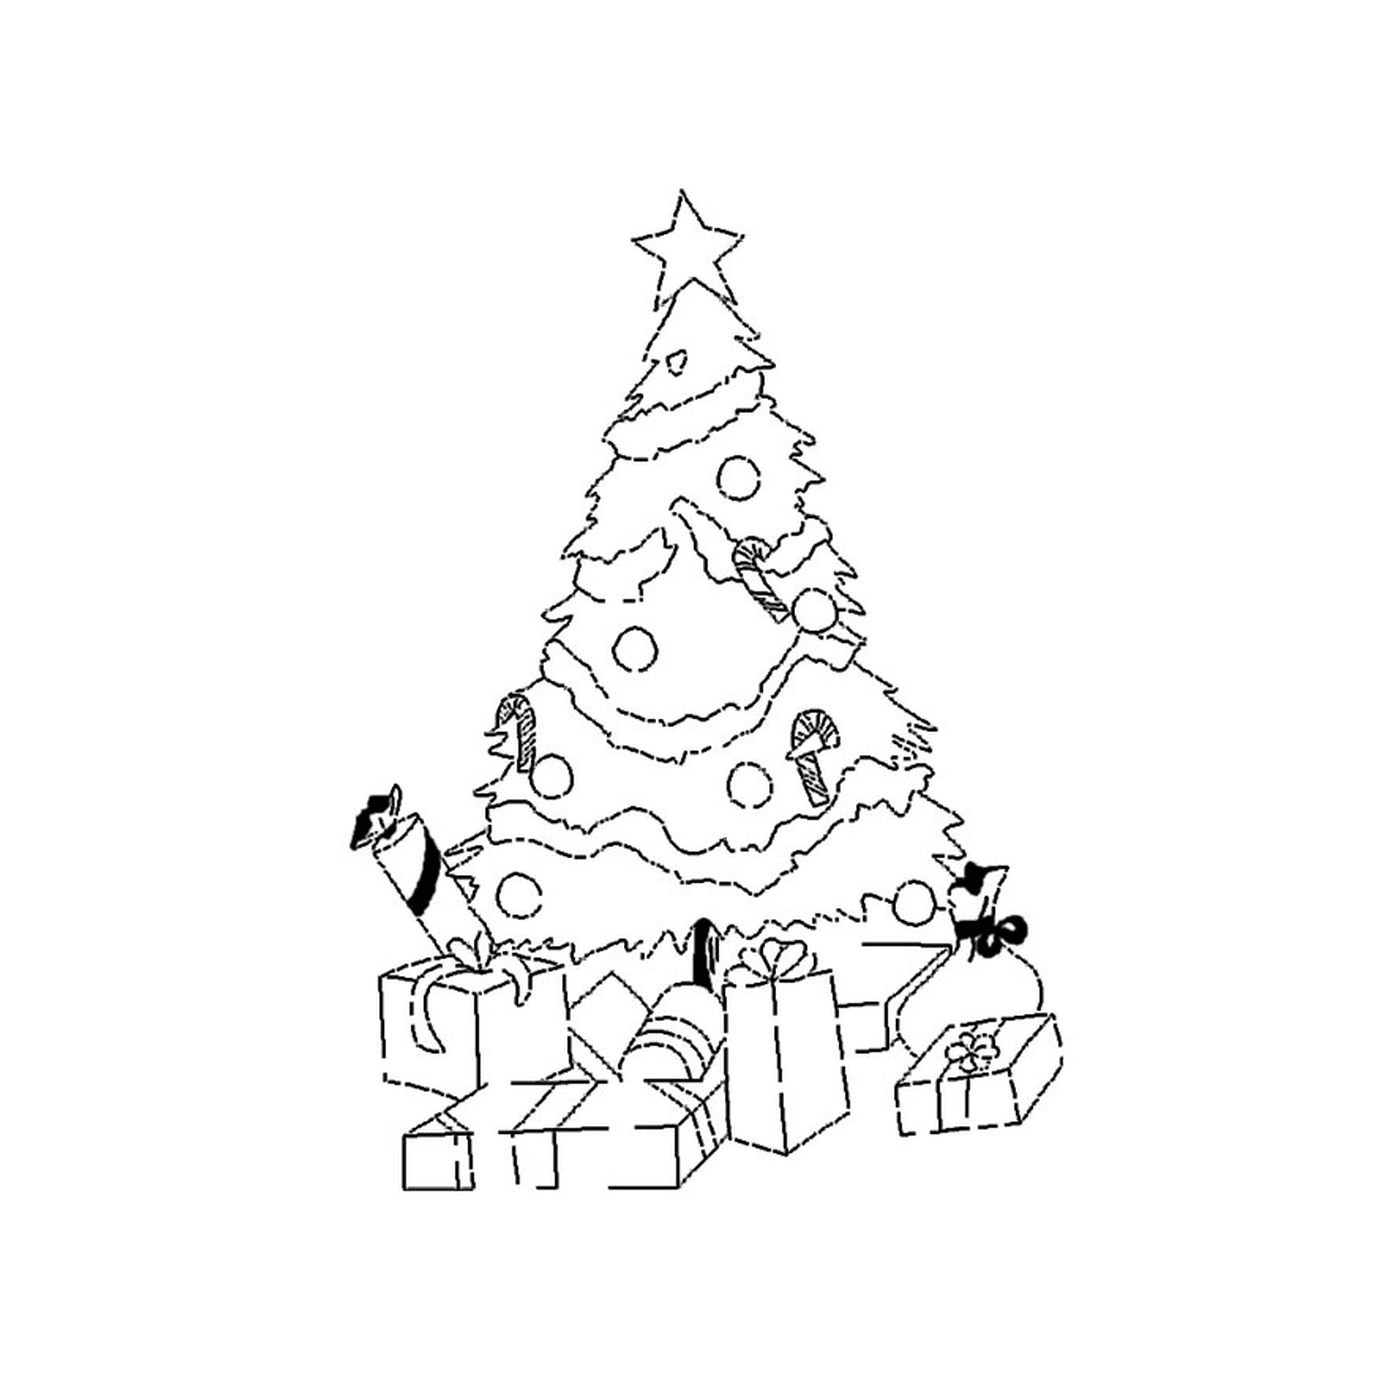  شجرة عيد الميلاد مع الهدايا 